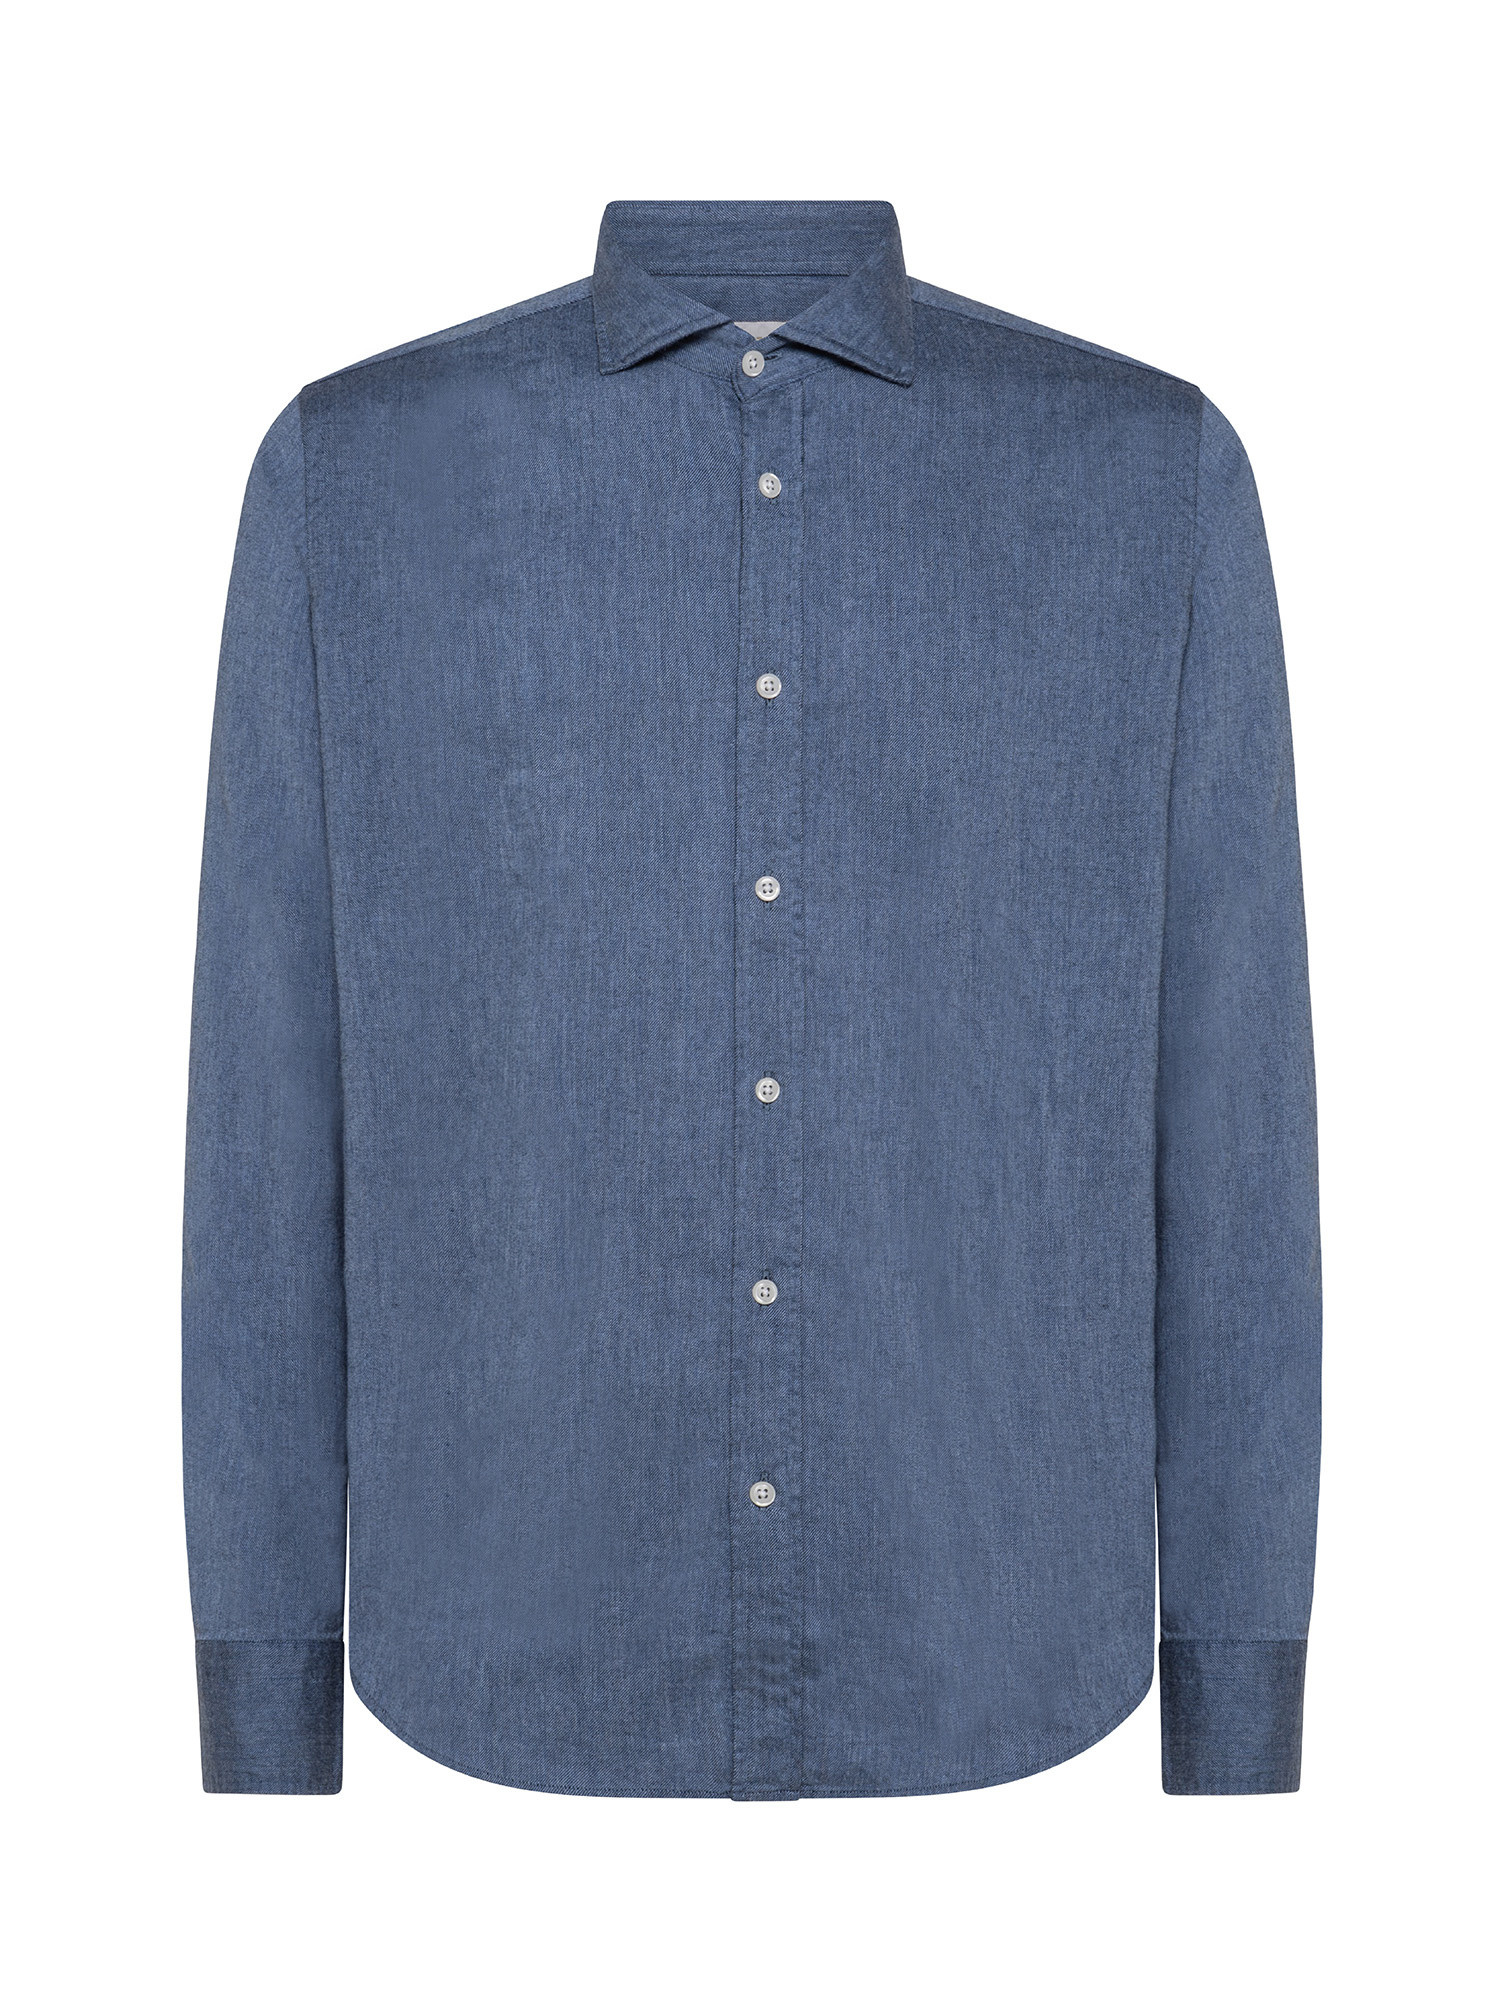 Camicia tailor fit in morbida flanella di cotone organico, Blu, large image number 0